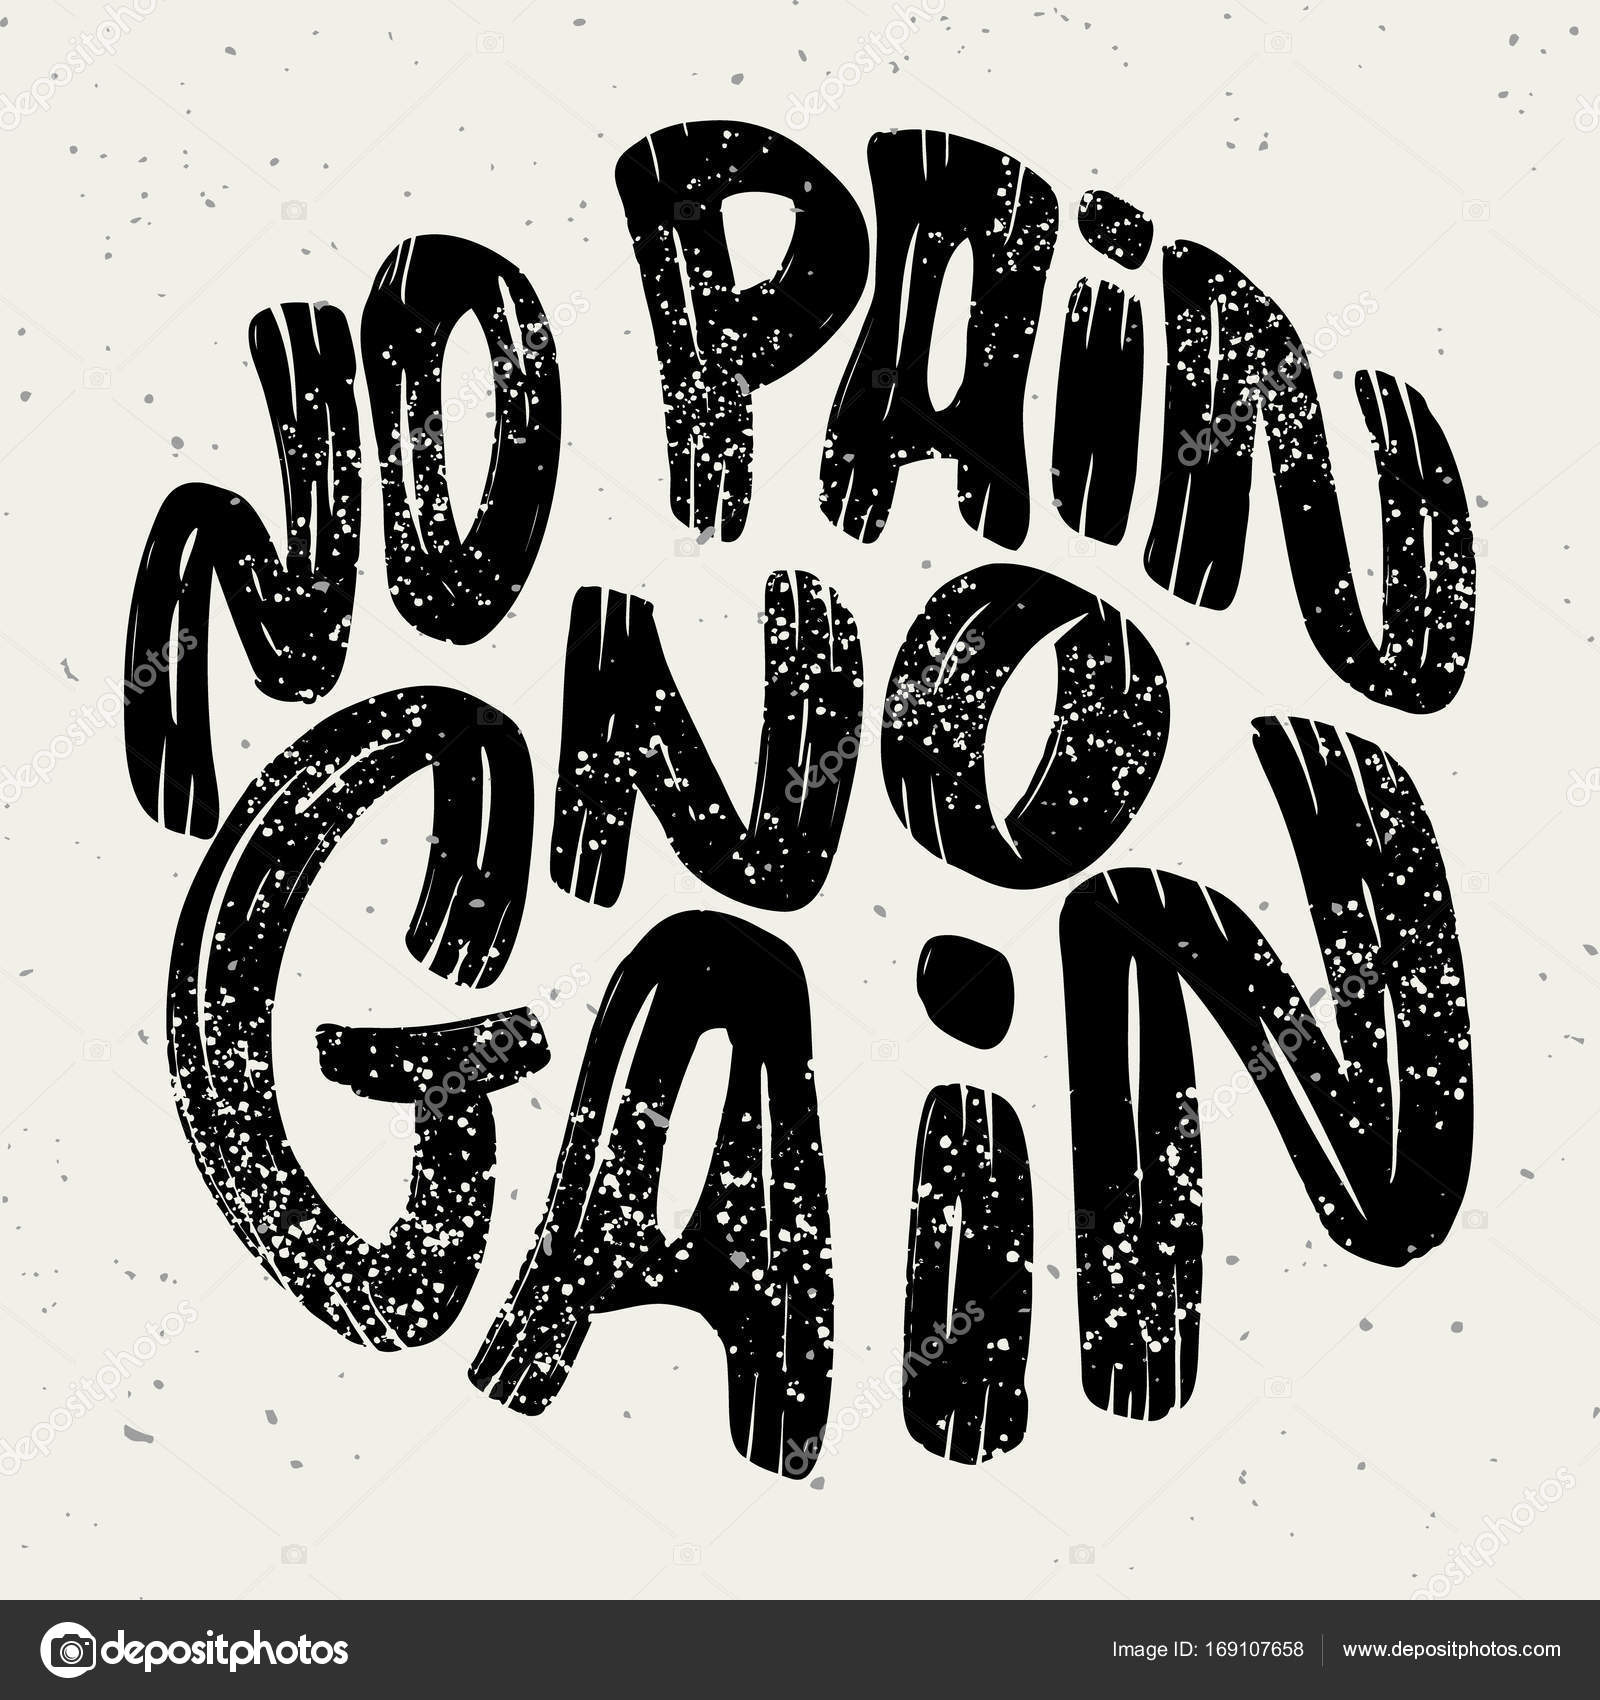 No pain no gain 意思